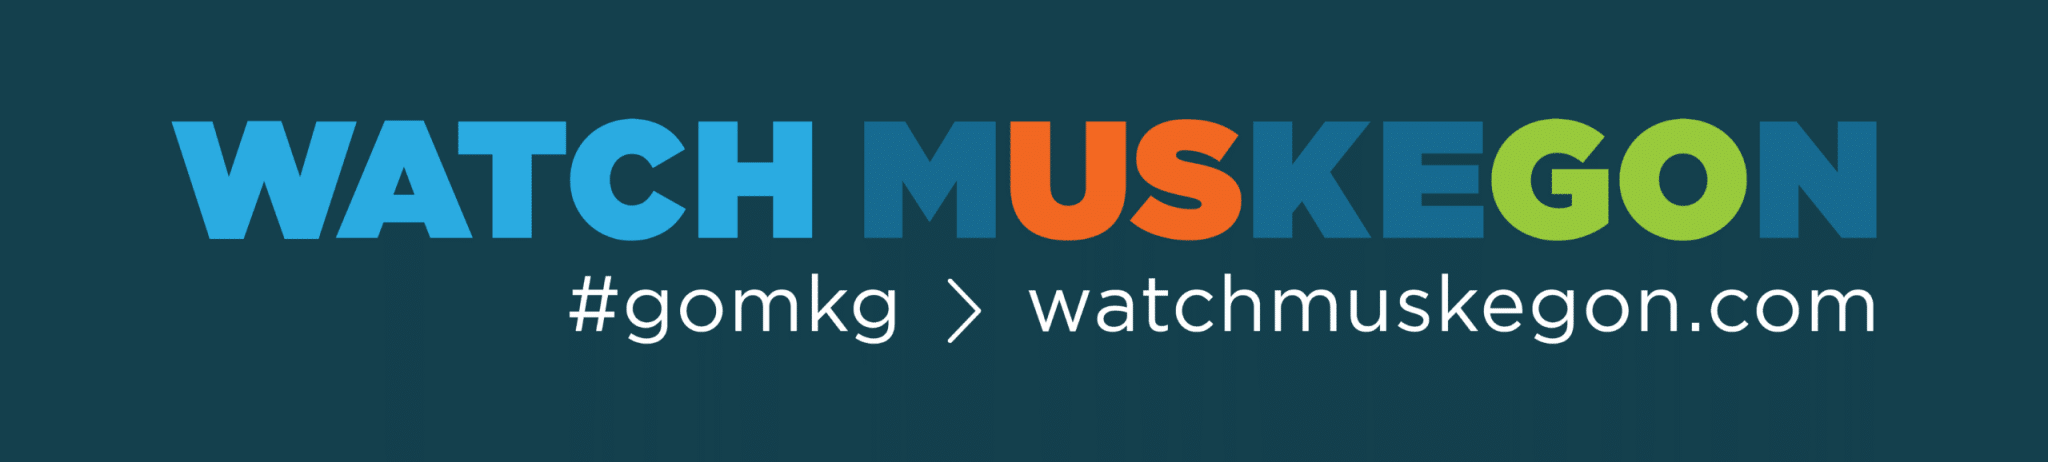 WatchMuskegon Digital Banner: #gomkg>watchmuskegon.com